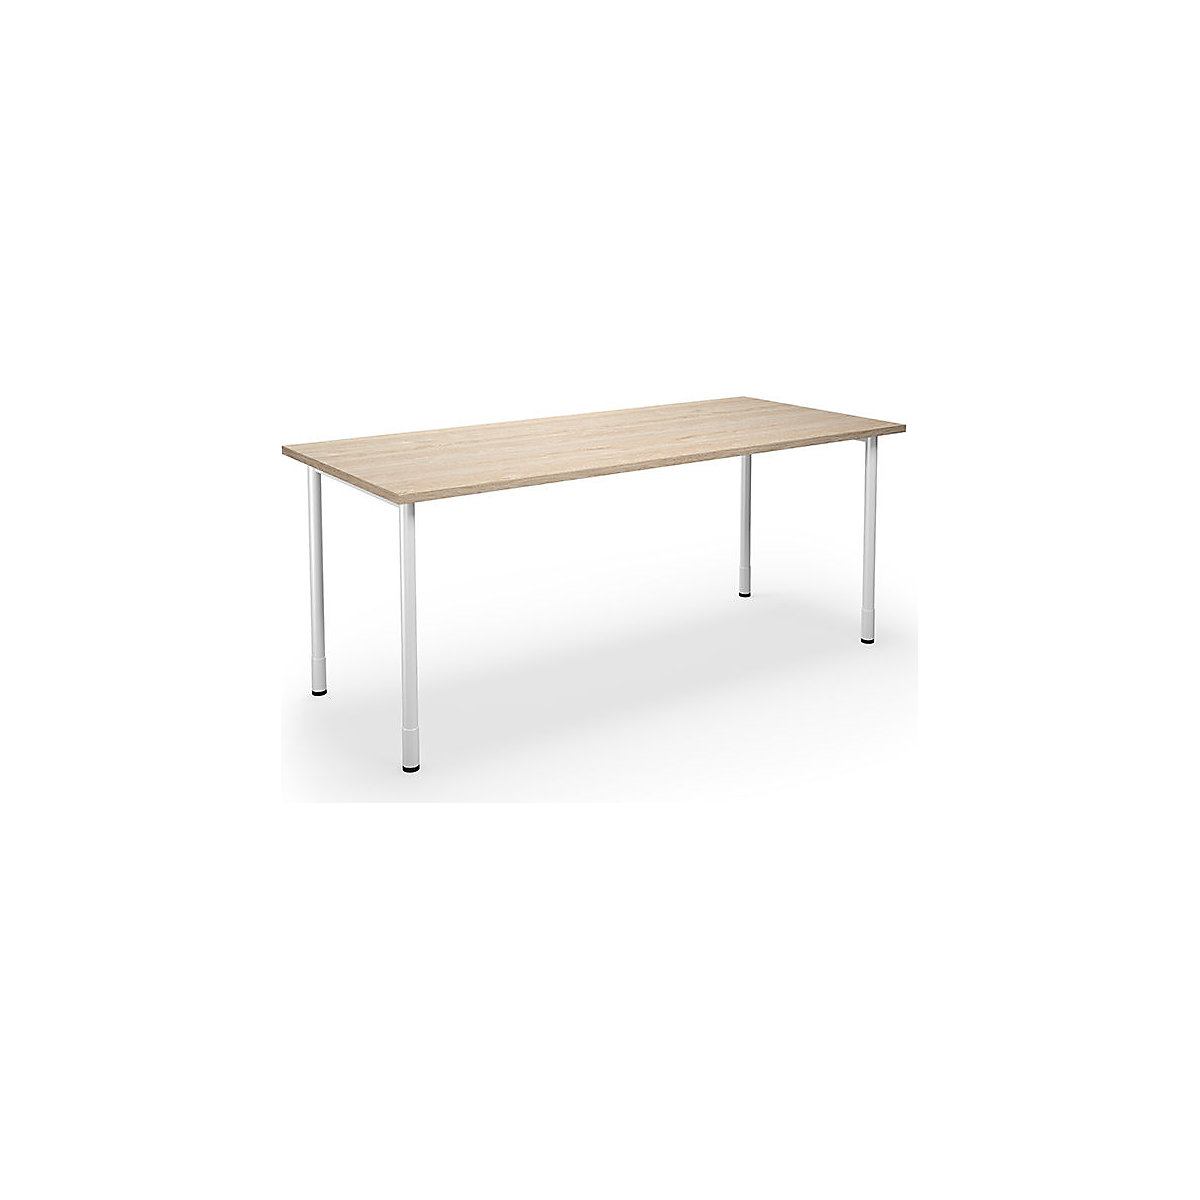 DUO-C multi-purpose desk, straight tabletop, WxD 1800 x 800 mm, oak, oak-10